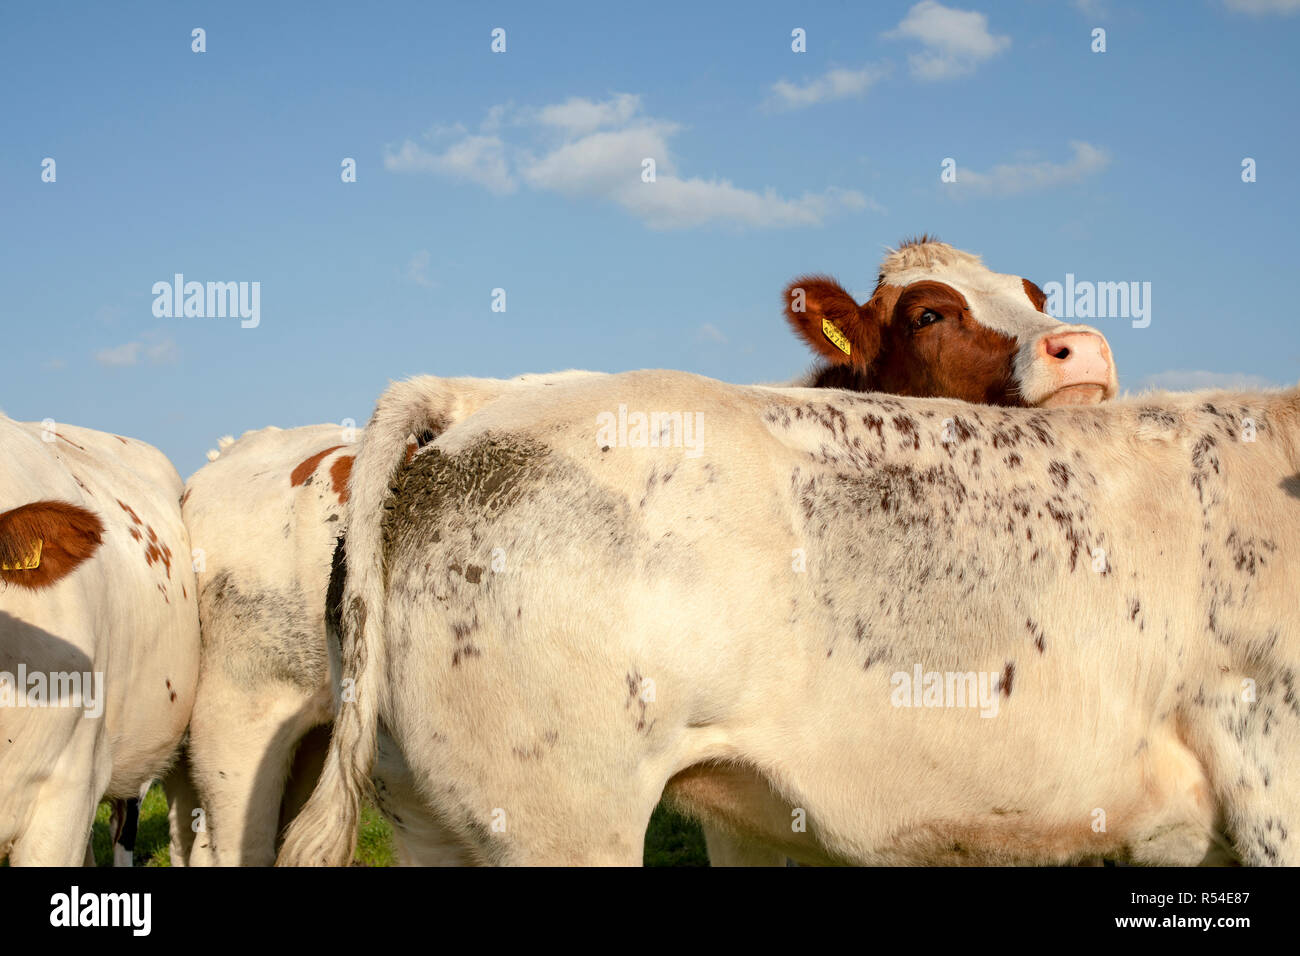 La vaca roja y blanca mirando hacia la parte posterior de otra vaca, cielo azul. Foto de stock